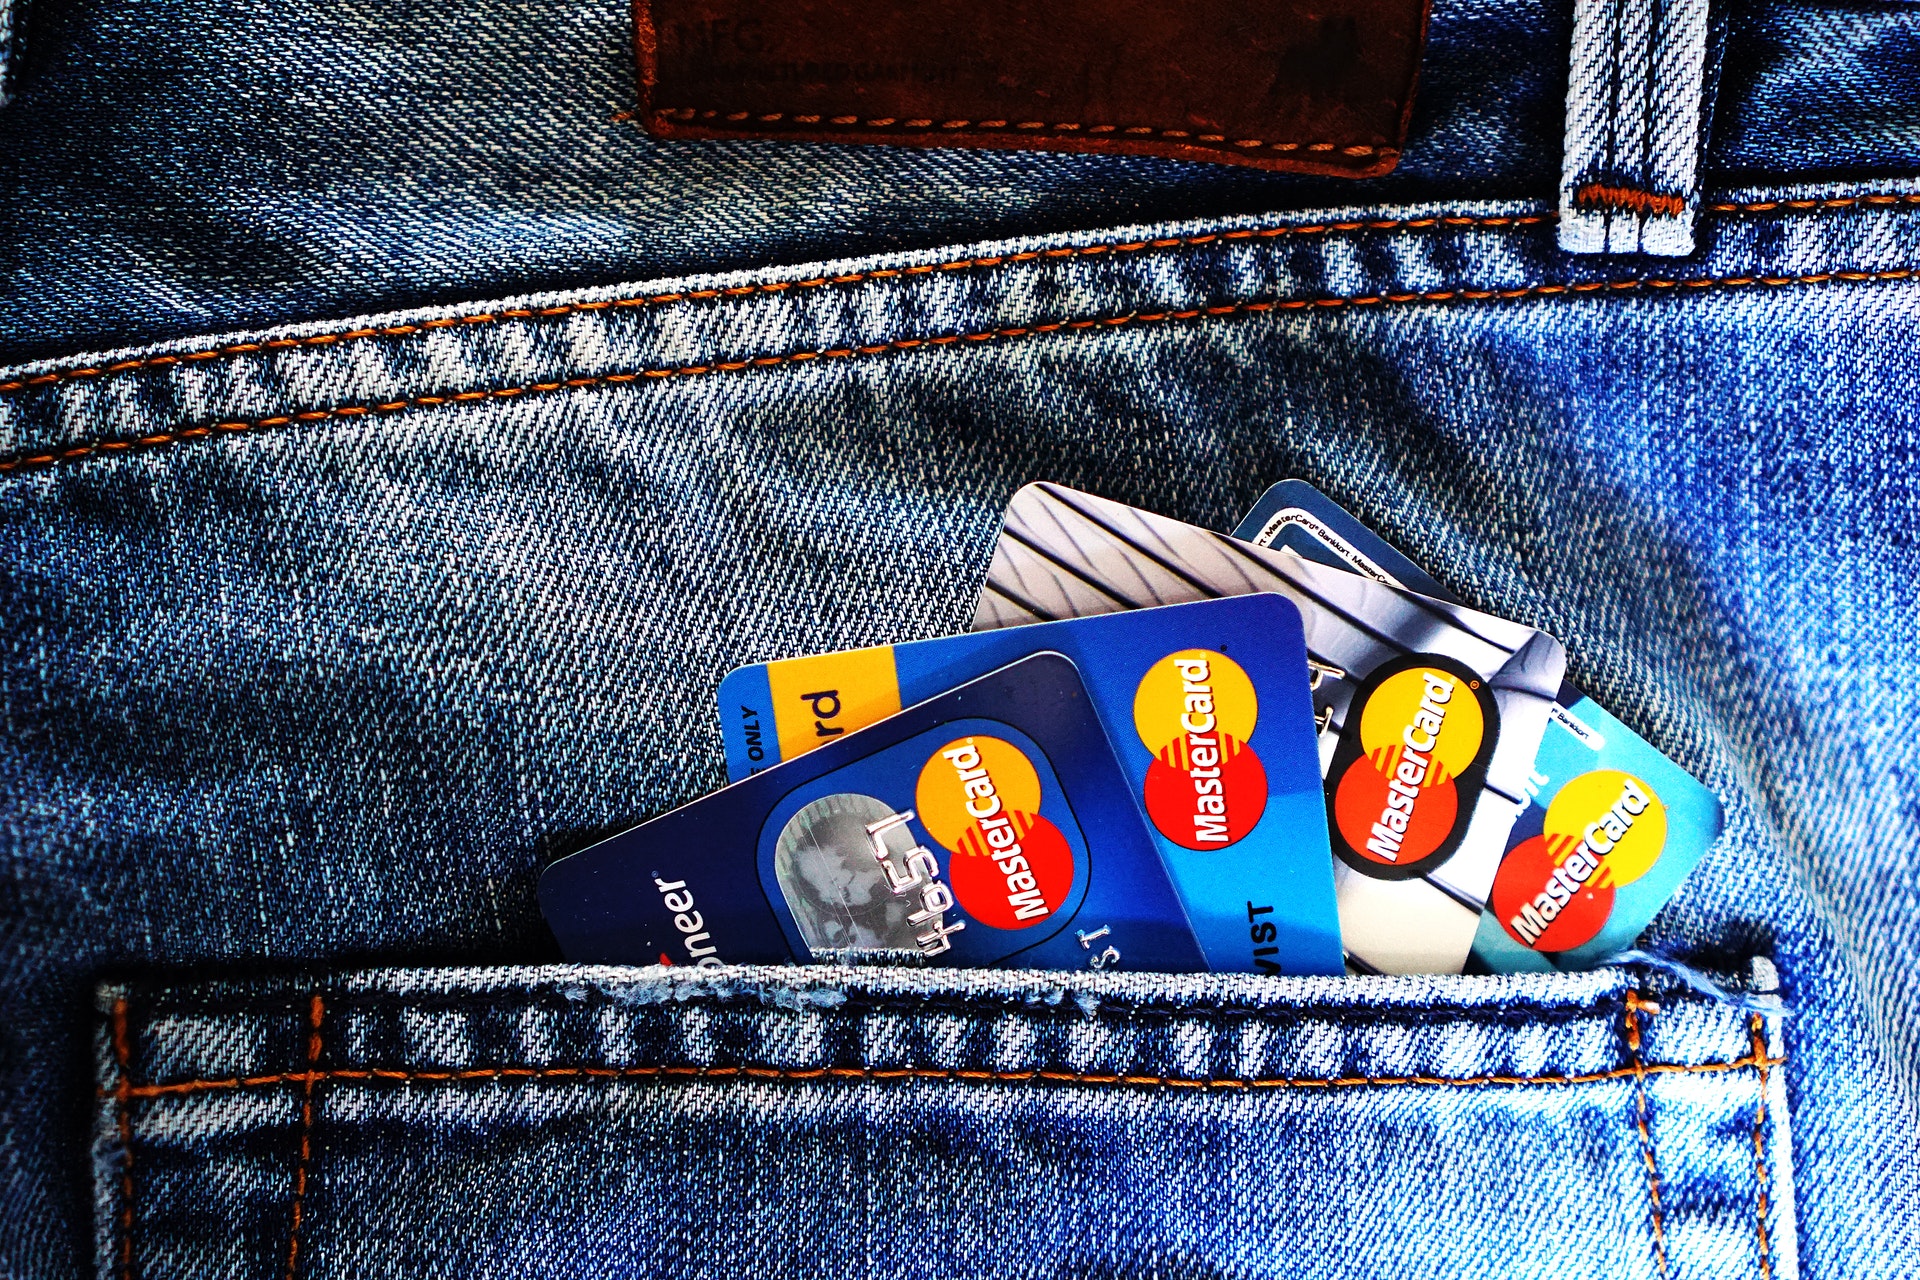 Vários cartões de crédito em um bolso. Fonte: Pexels